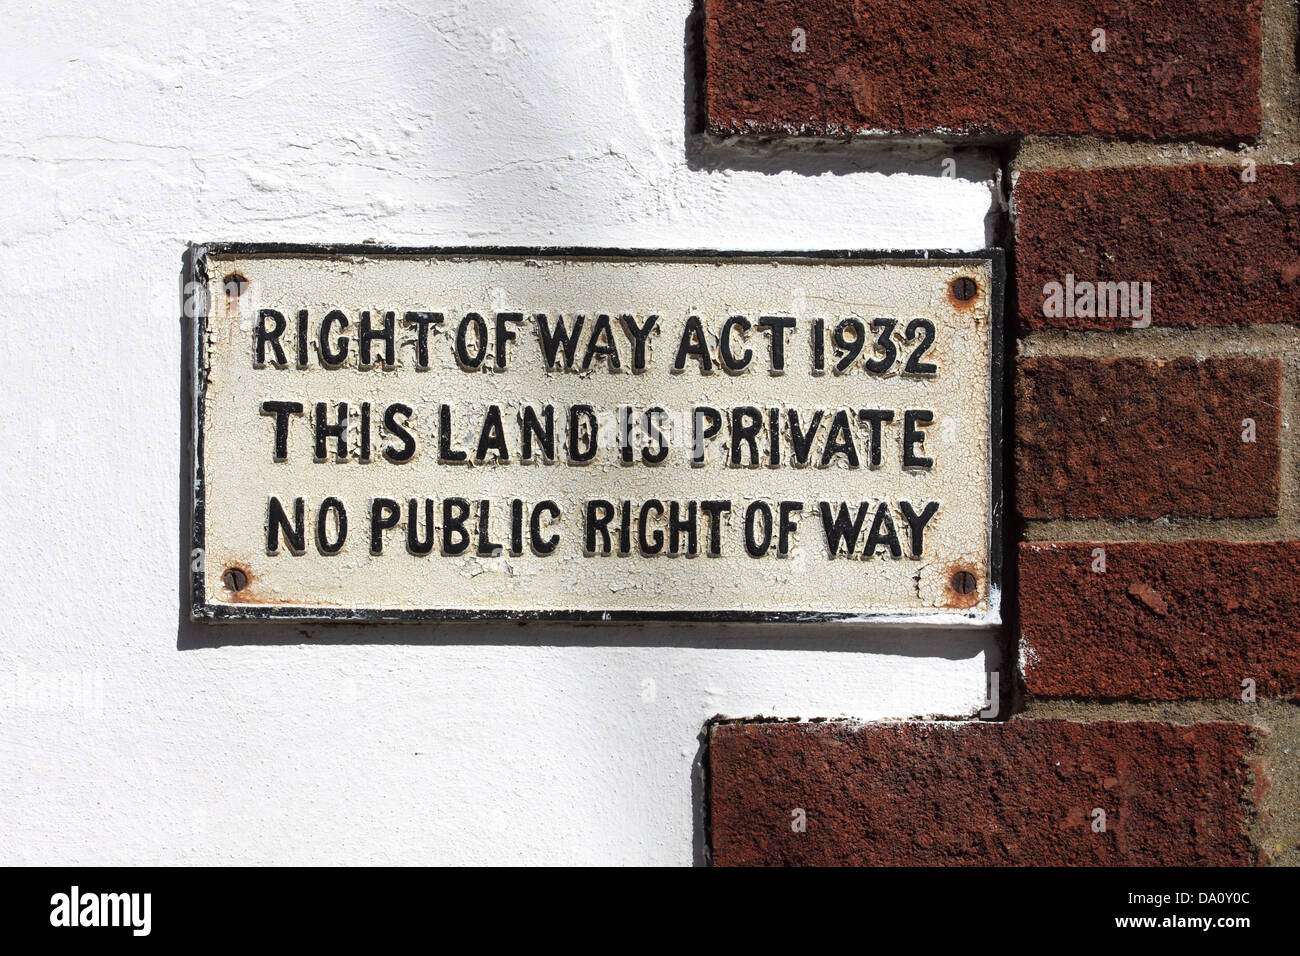 "Droit de passage Act 1932' dans une ruelle, Swaffham, Angleterre Banque D'Images